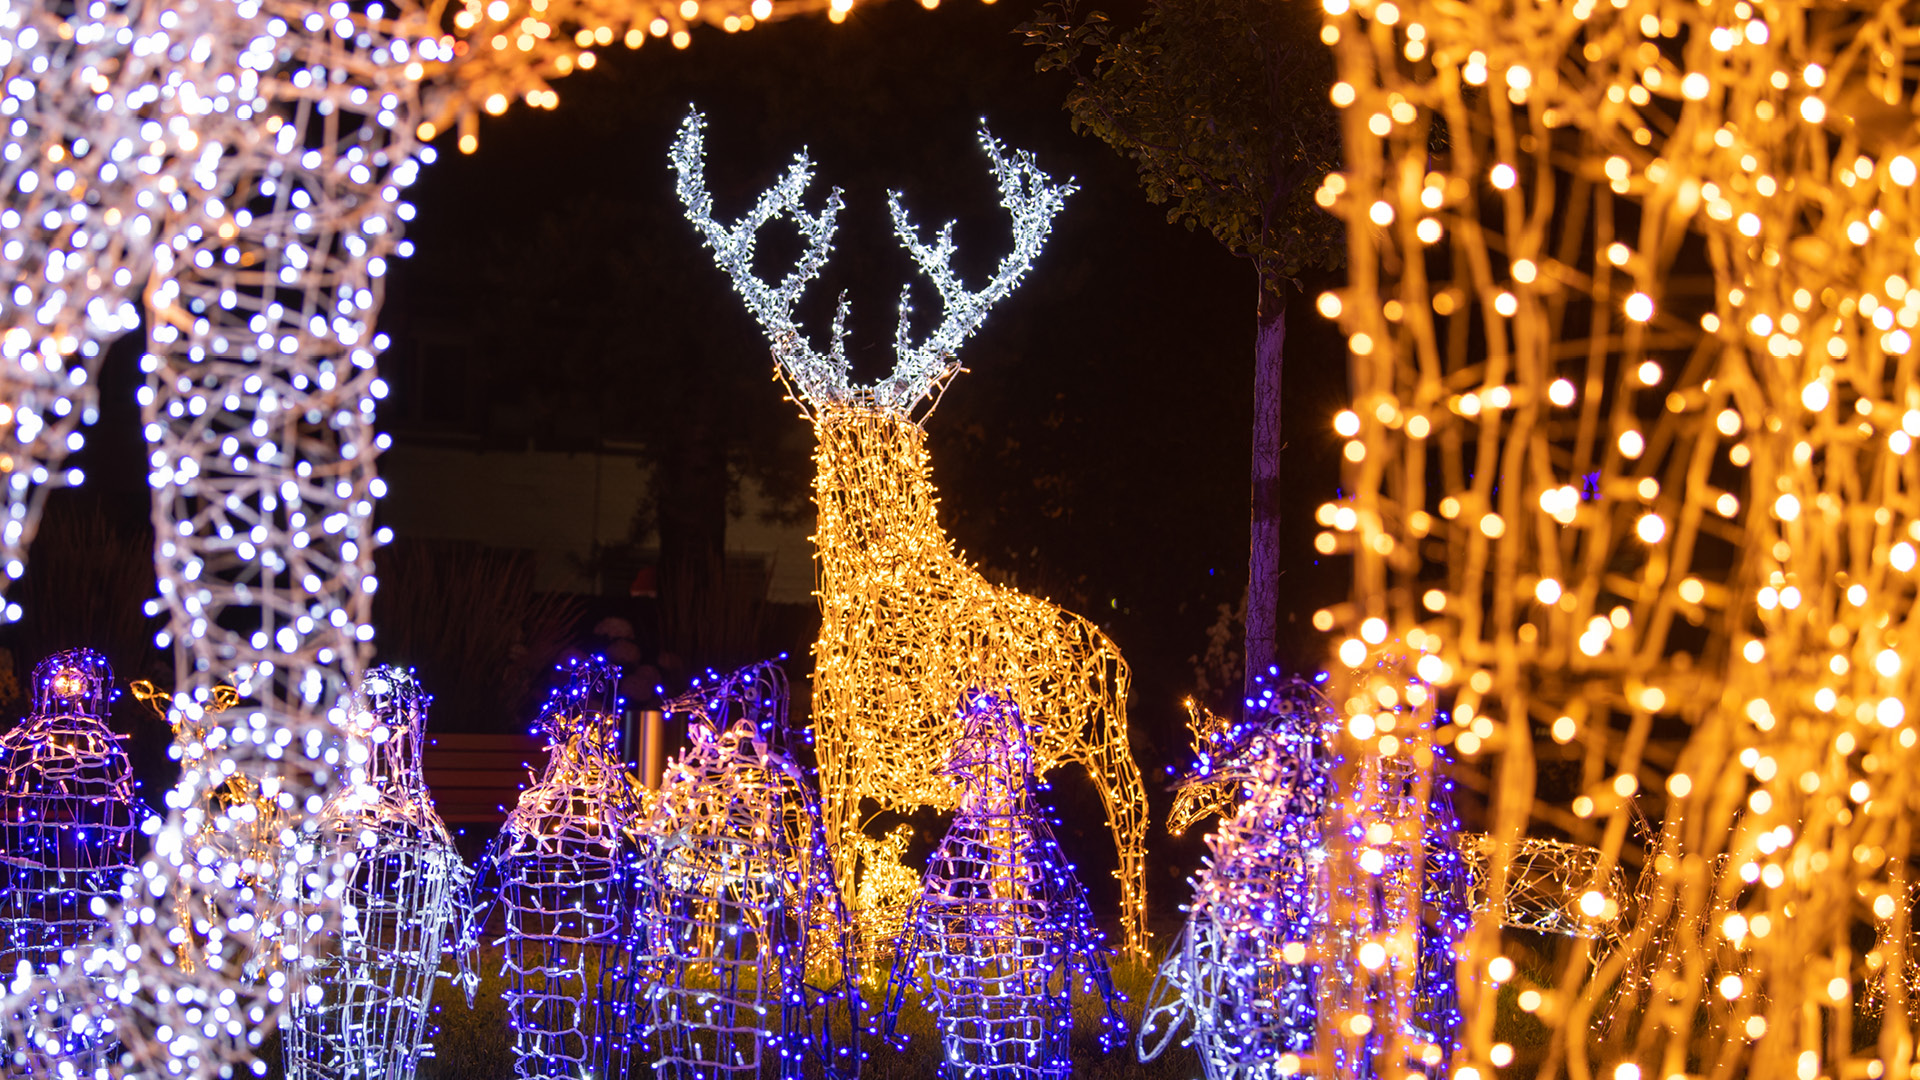 Eine Hirschfigur aus LED-Lichtern steht in einem Park. Tausende von Lichtern schimmern und glänzen, dass der Park erleuchtet wird. Die Lichtshow lässt den Park erhellen.  